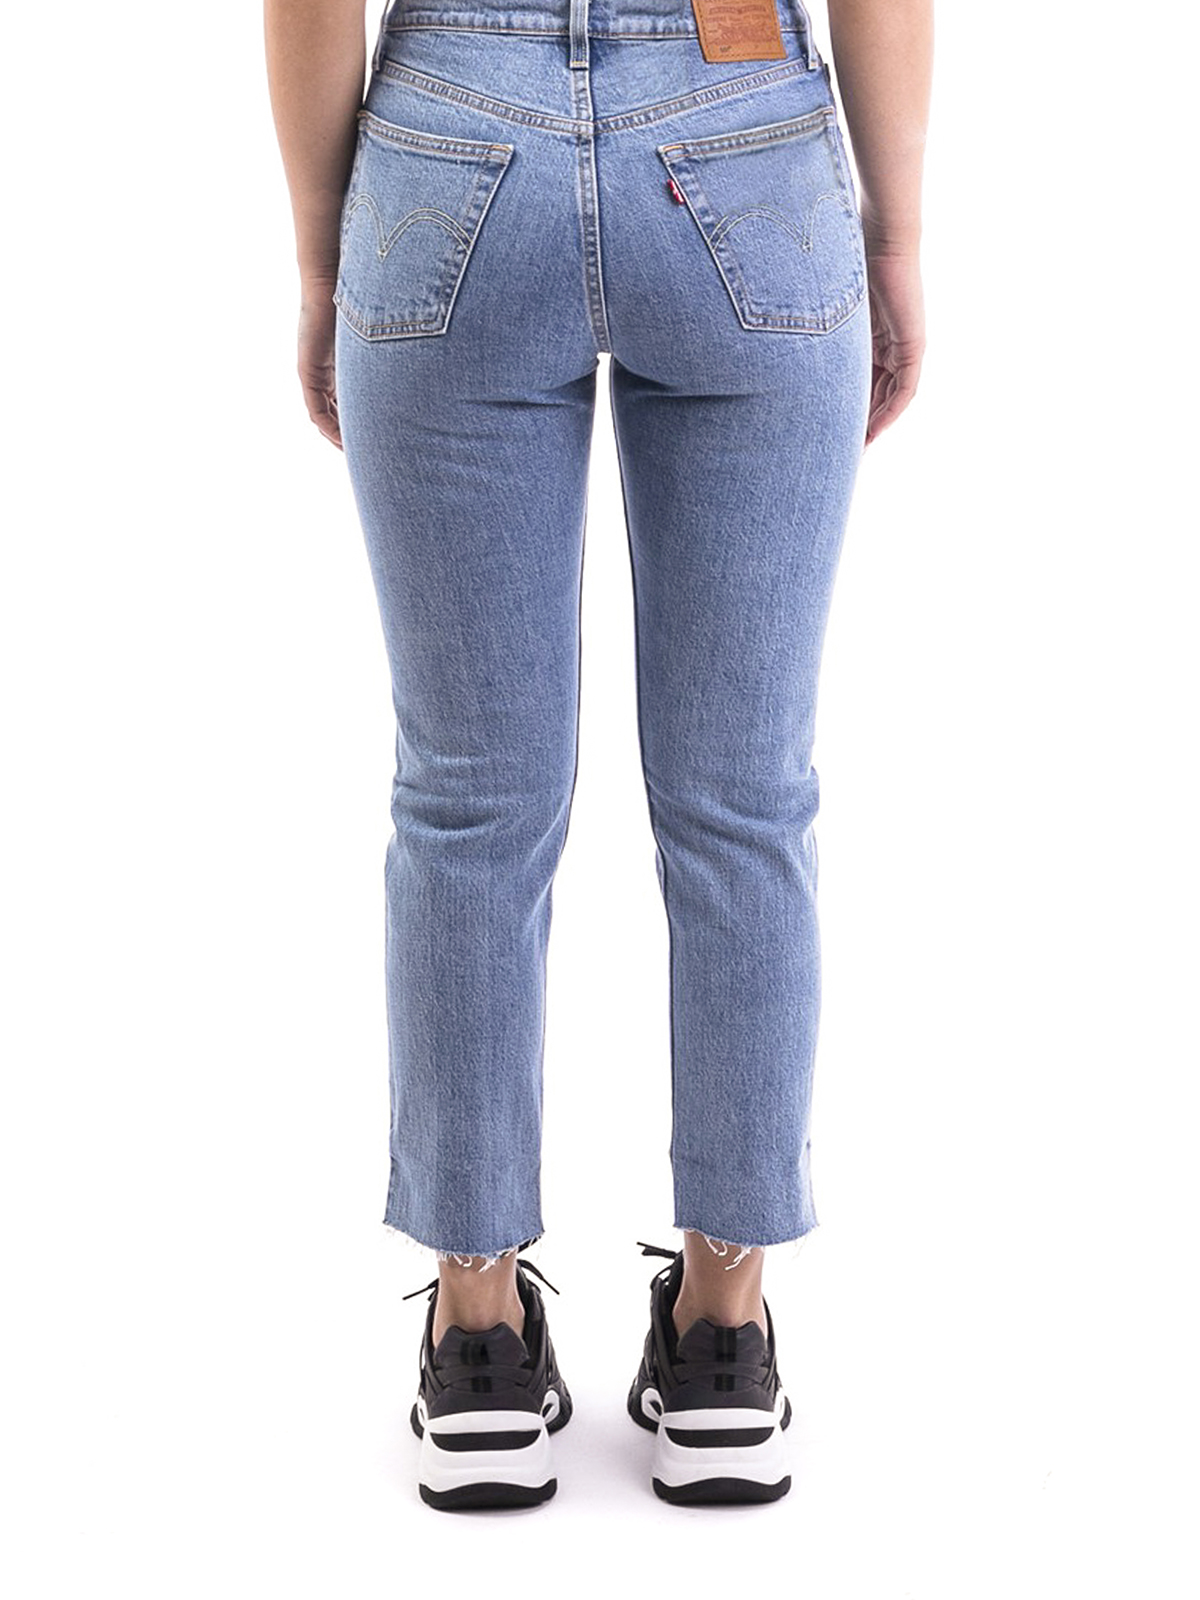 levis jeans shop online